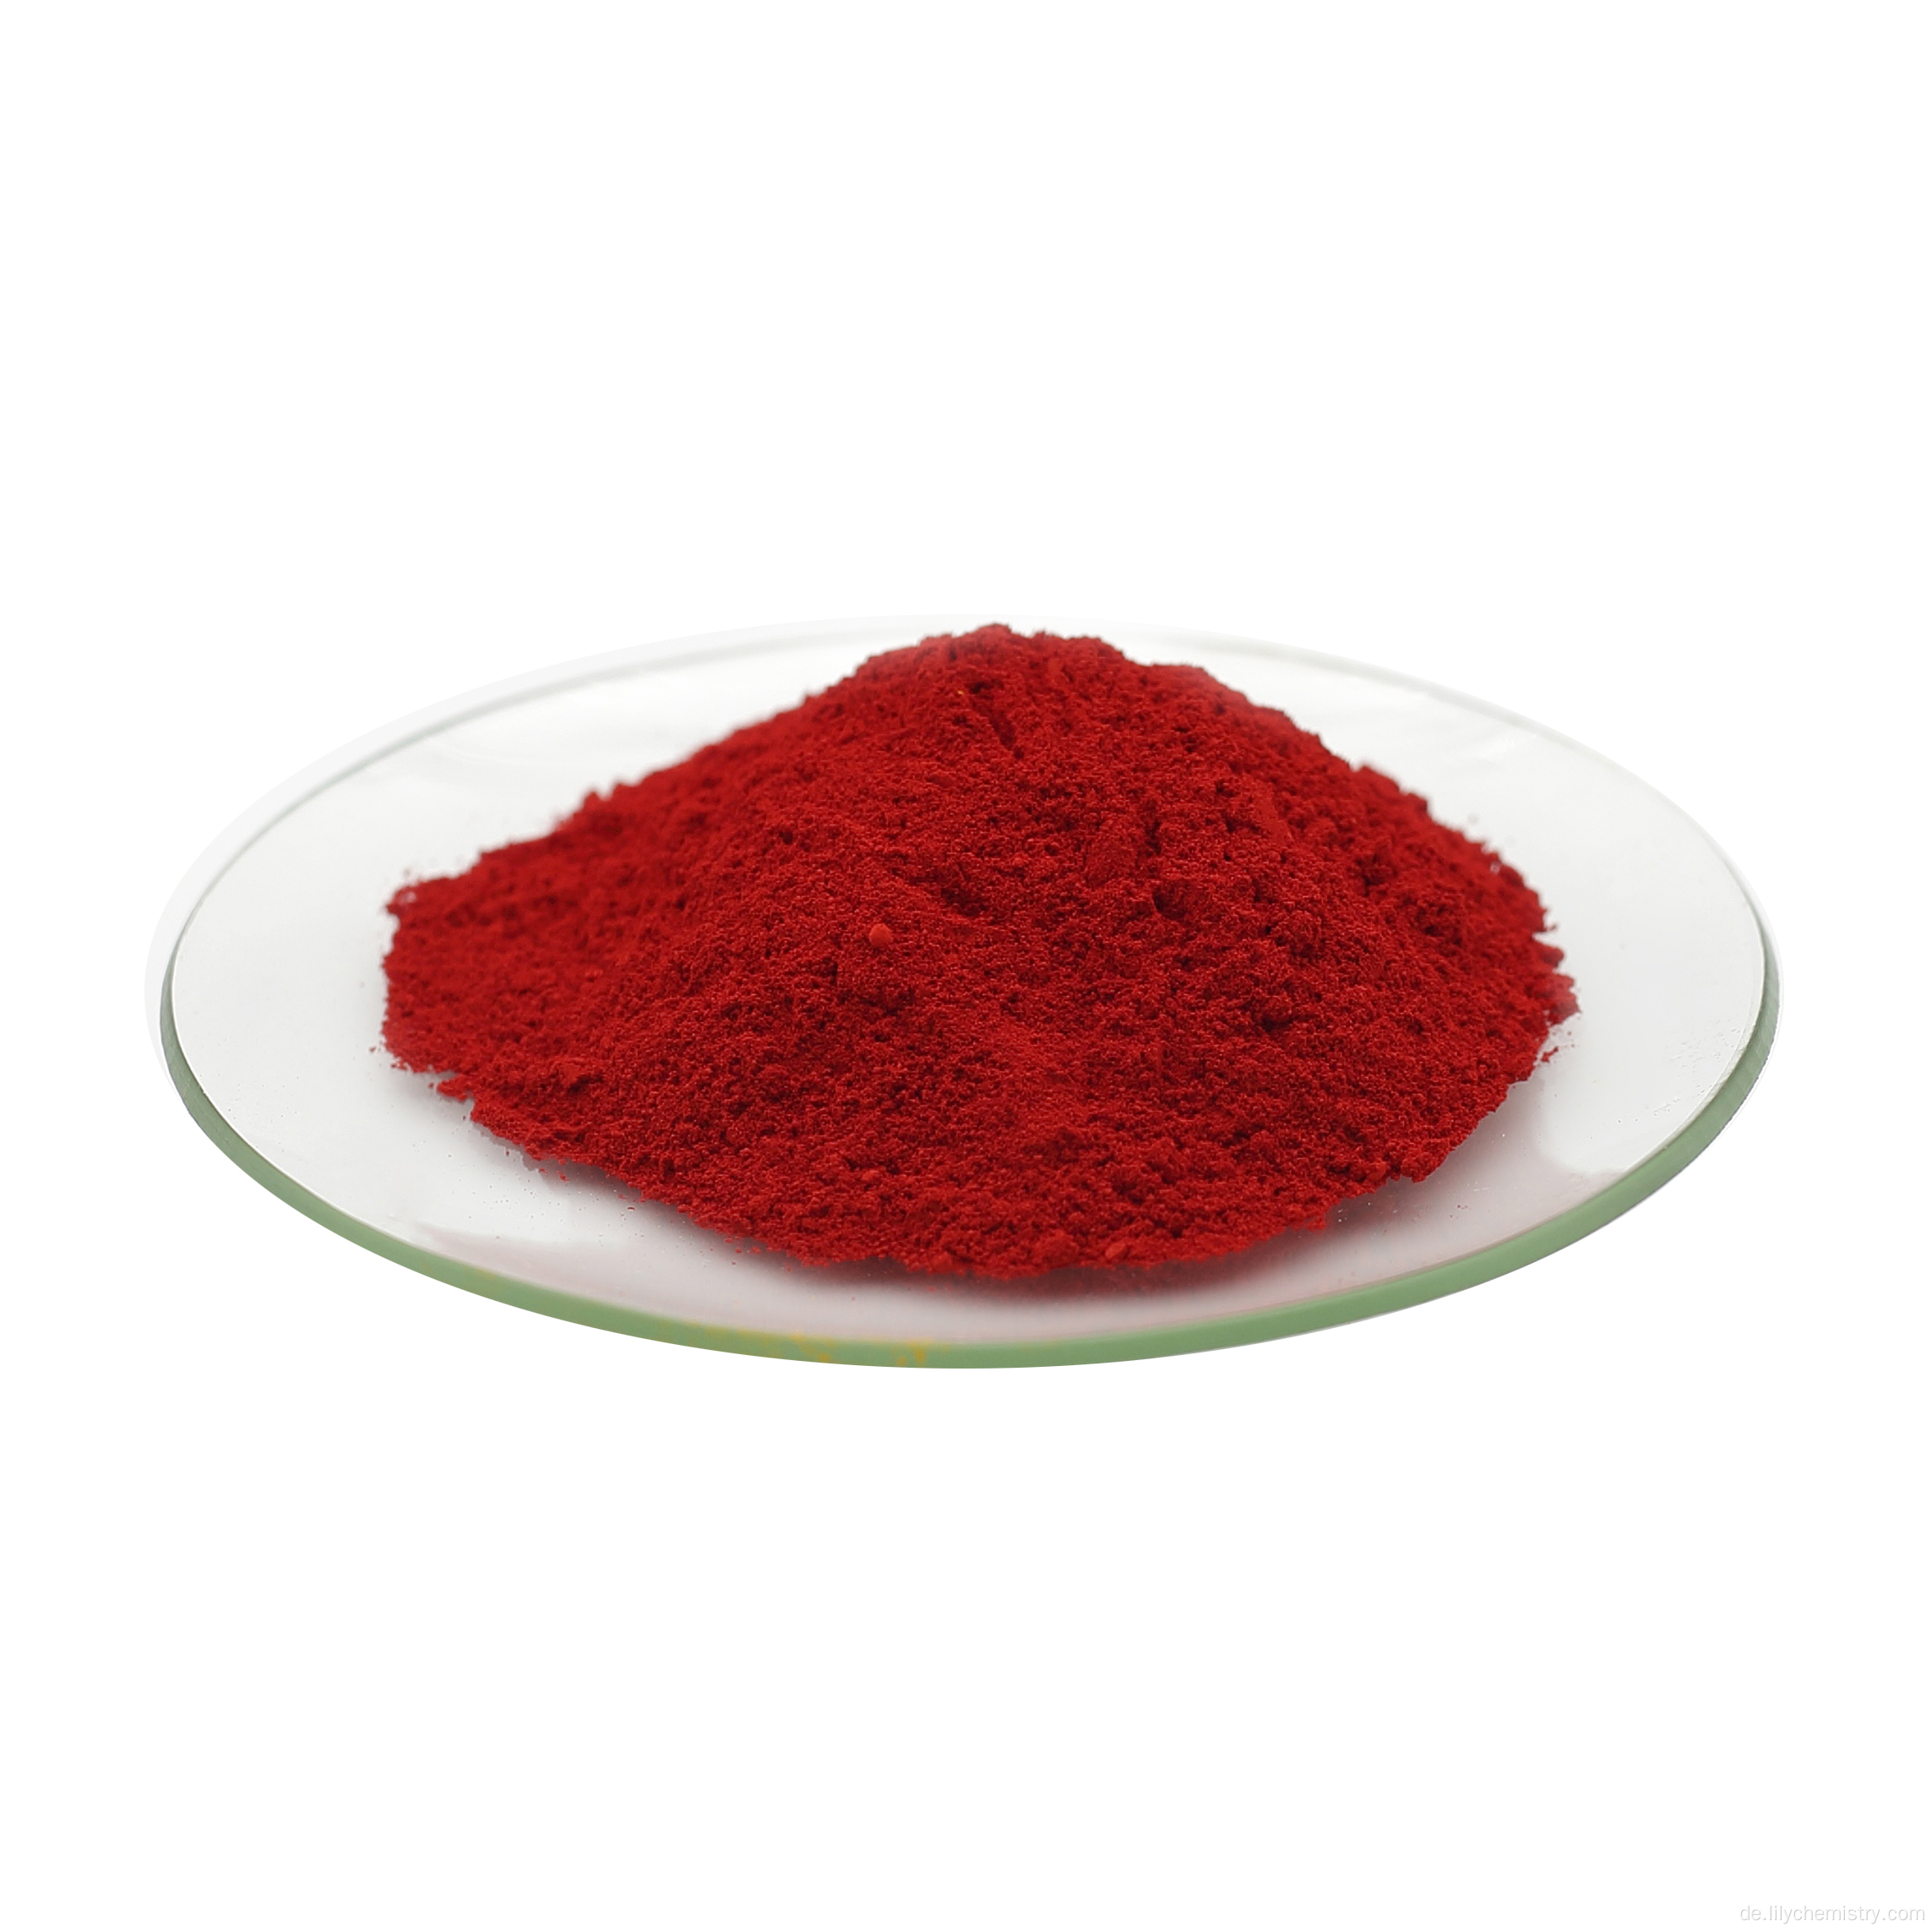 Allgemeines organisches Pigment Red BH-06 PR 3